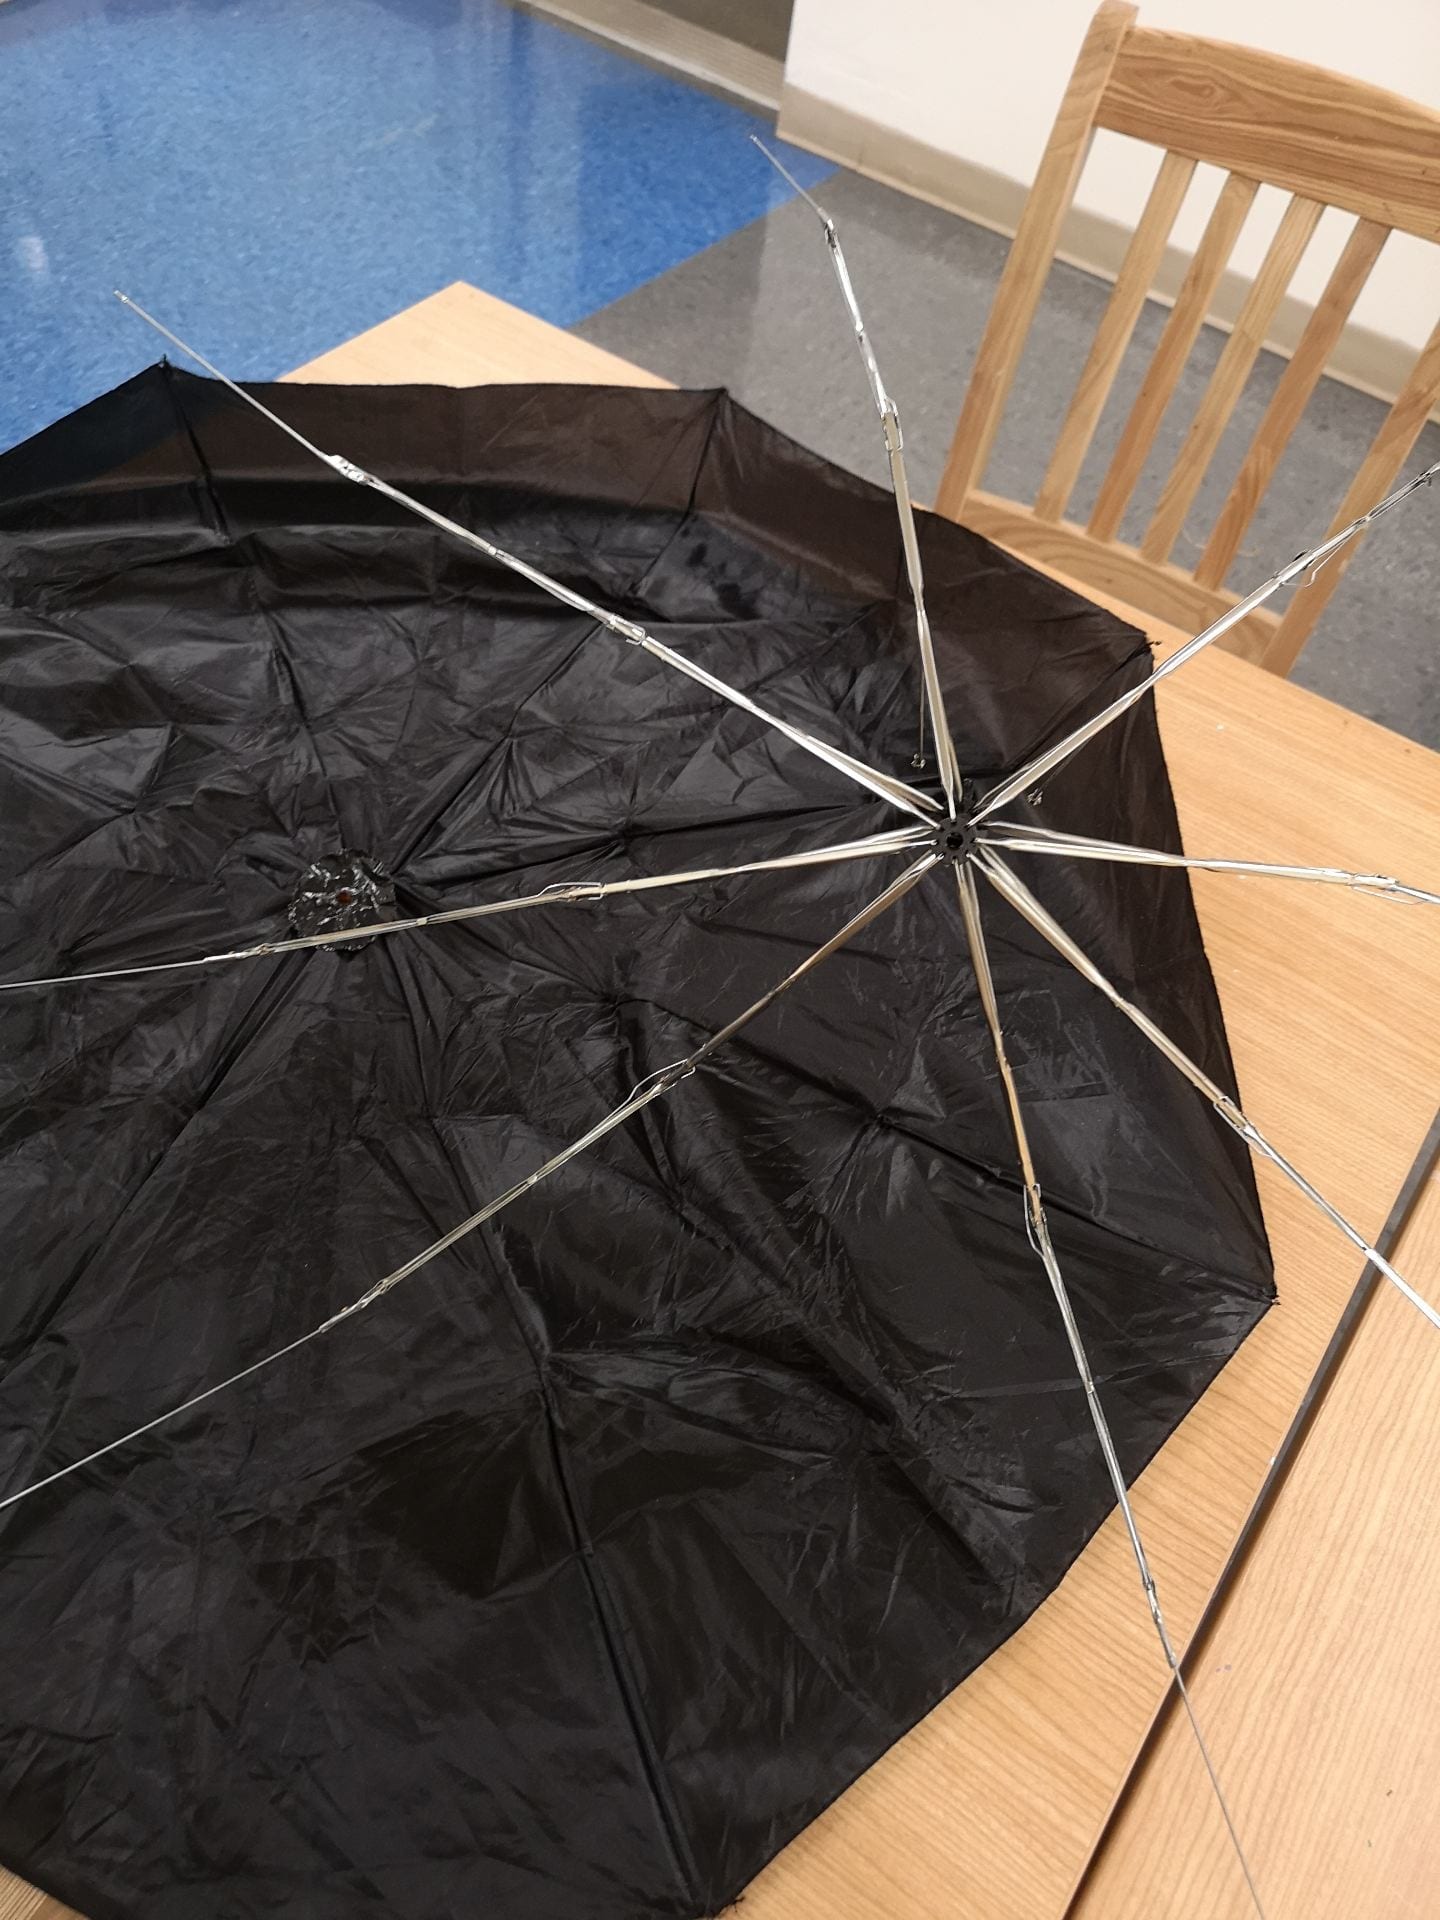 Broken Umbrella Repair?